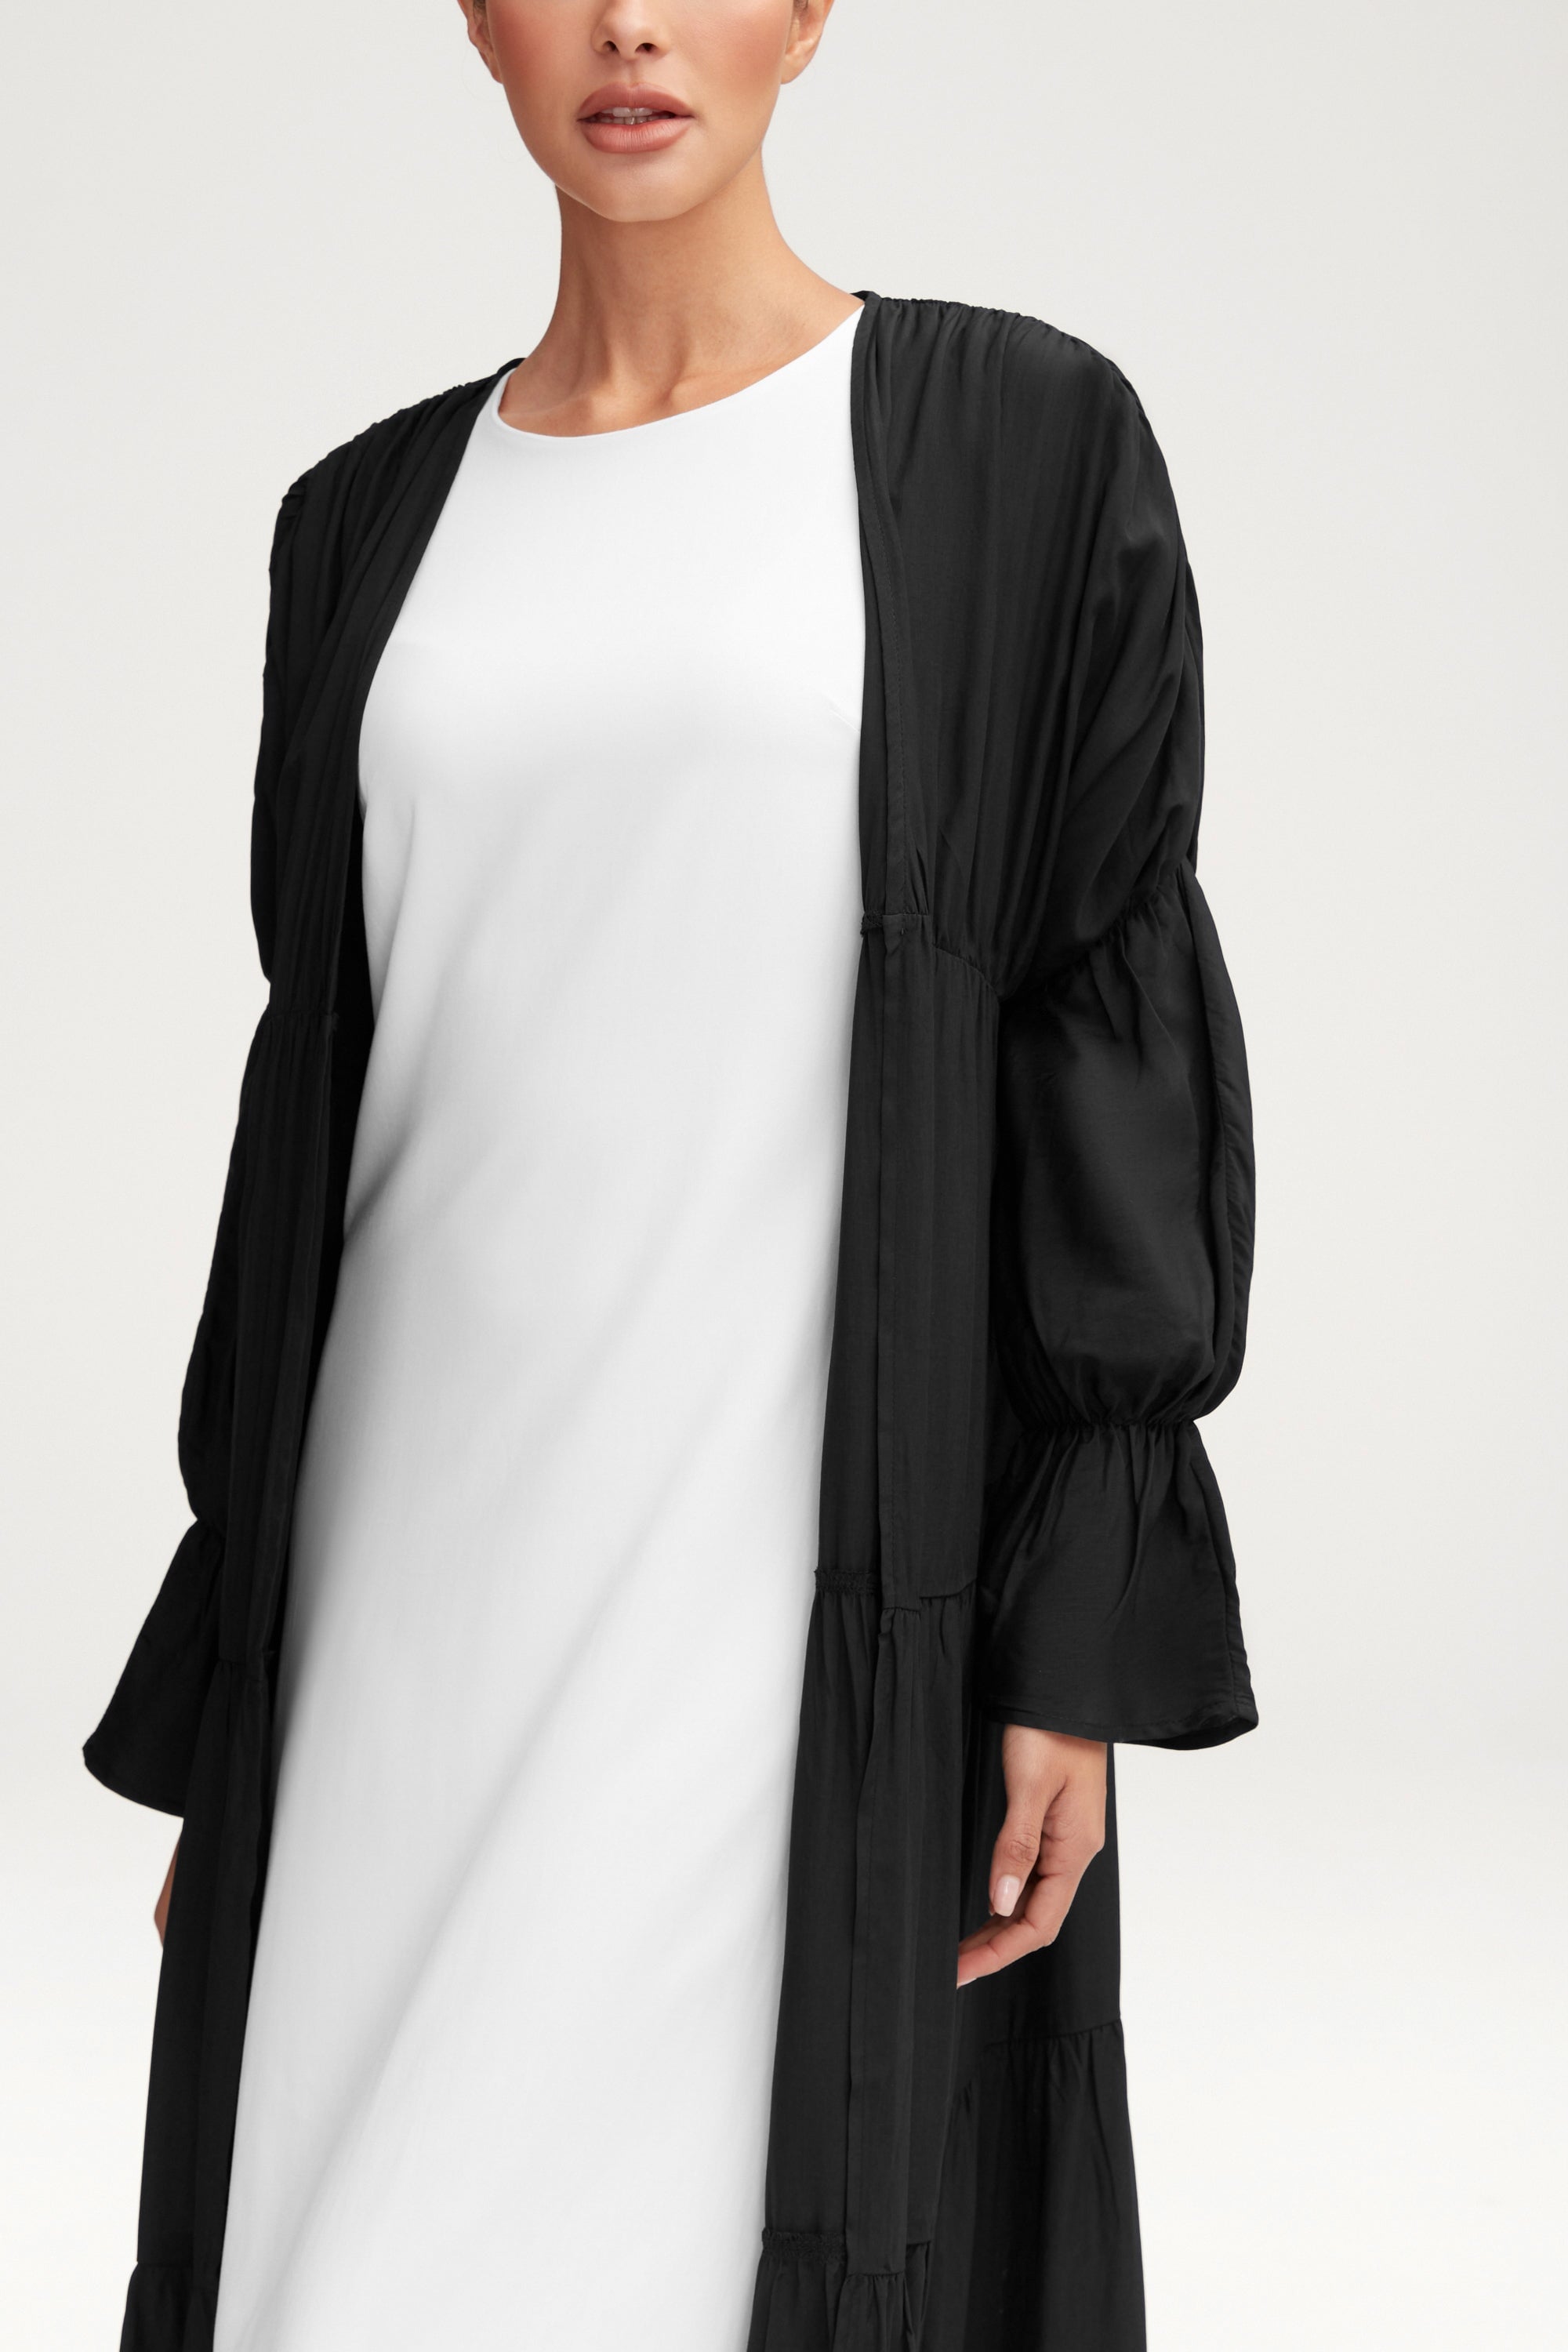 Malika Open Abaya - Black Clothing Veiled 